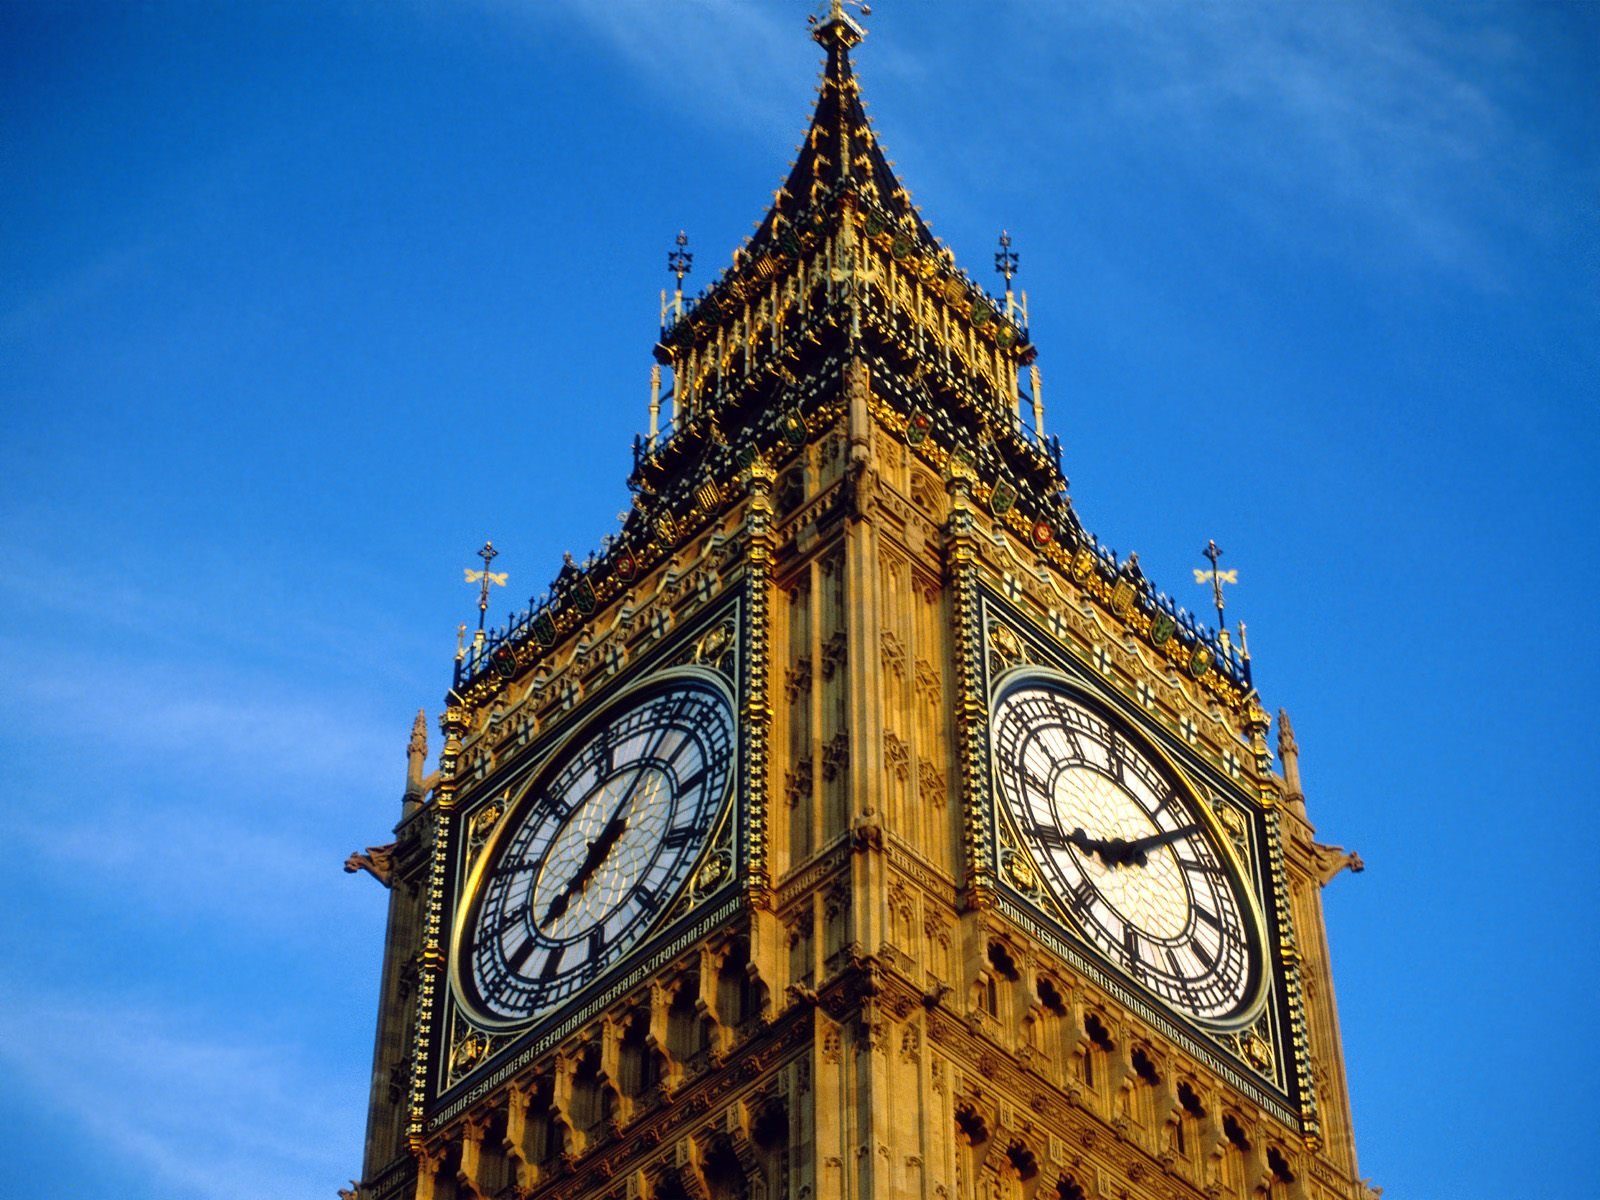 Đồng hồ Big Ben nổi tiếng của cung điện Westminster